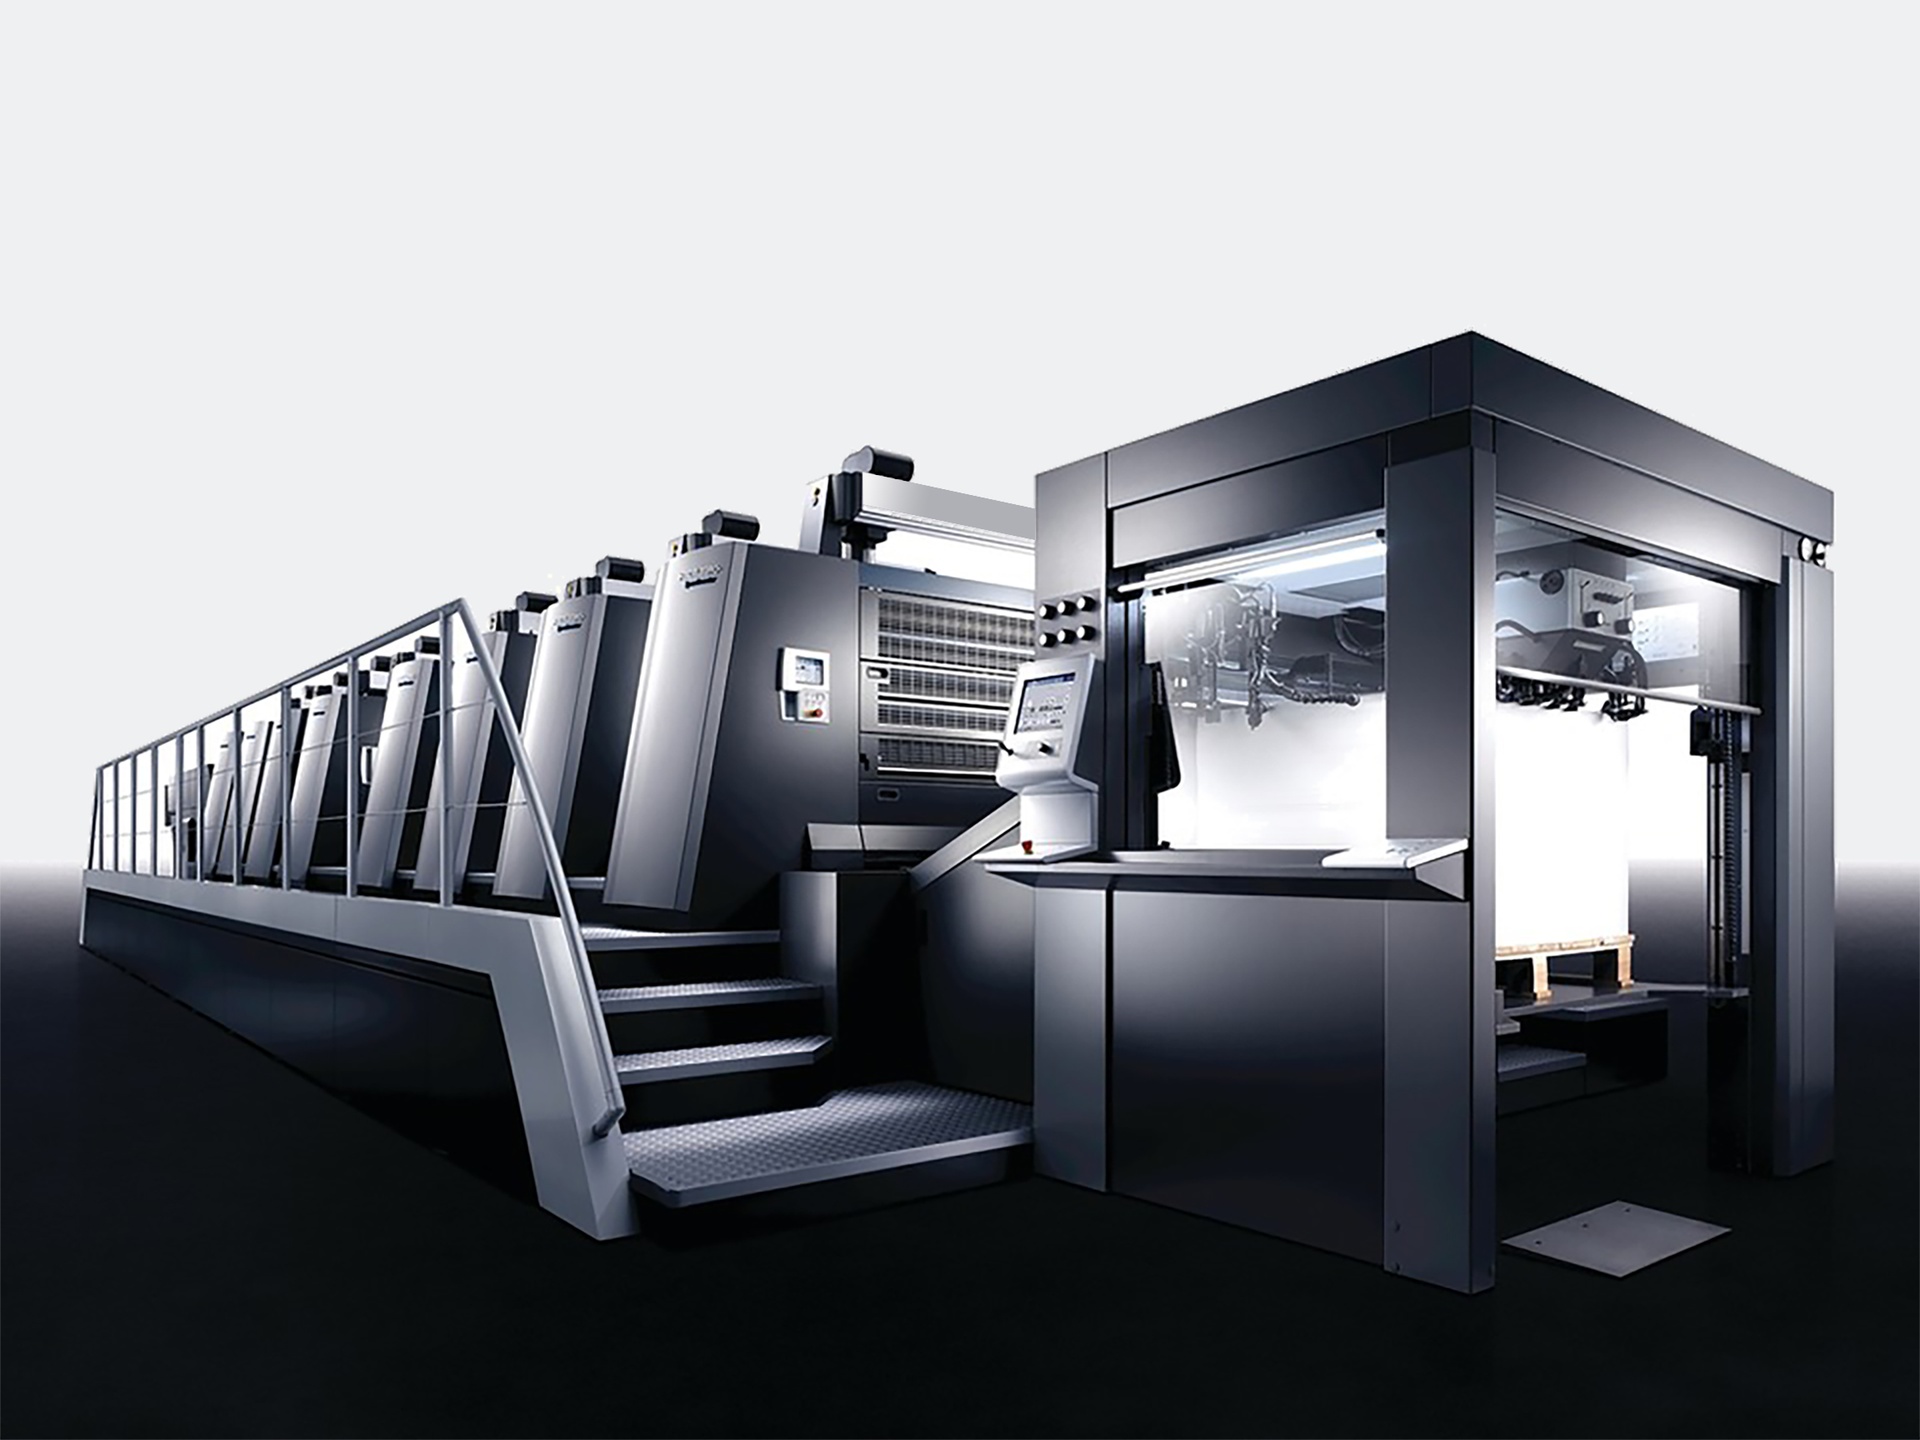 Heidelberg Speedmaster XL 106 10-color offset press